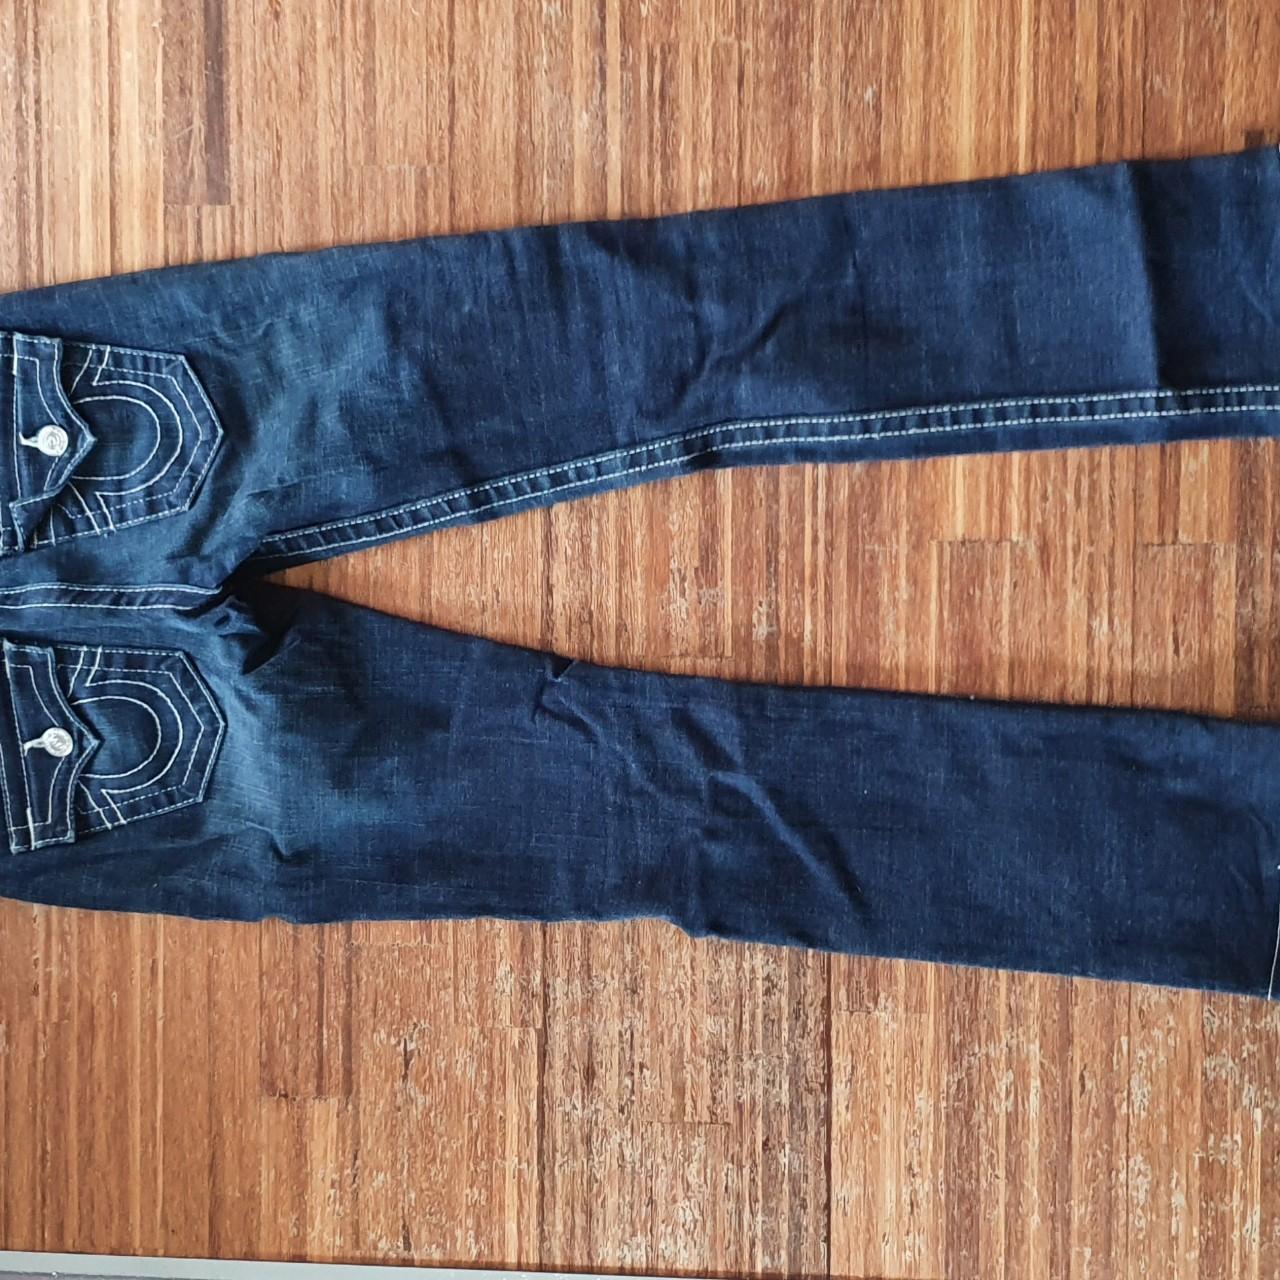 True Religion Billy Bootcut Jeans. Dark blue wash,... - Depop